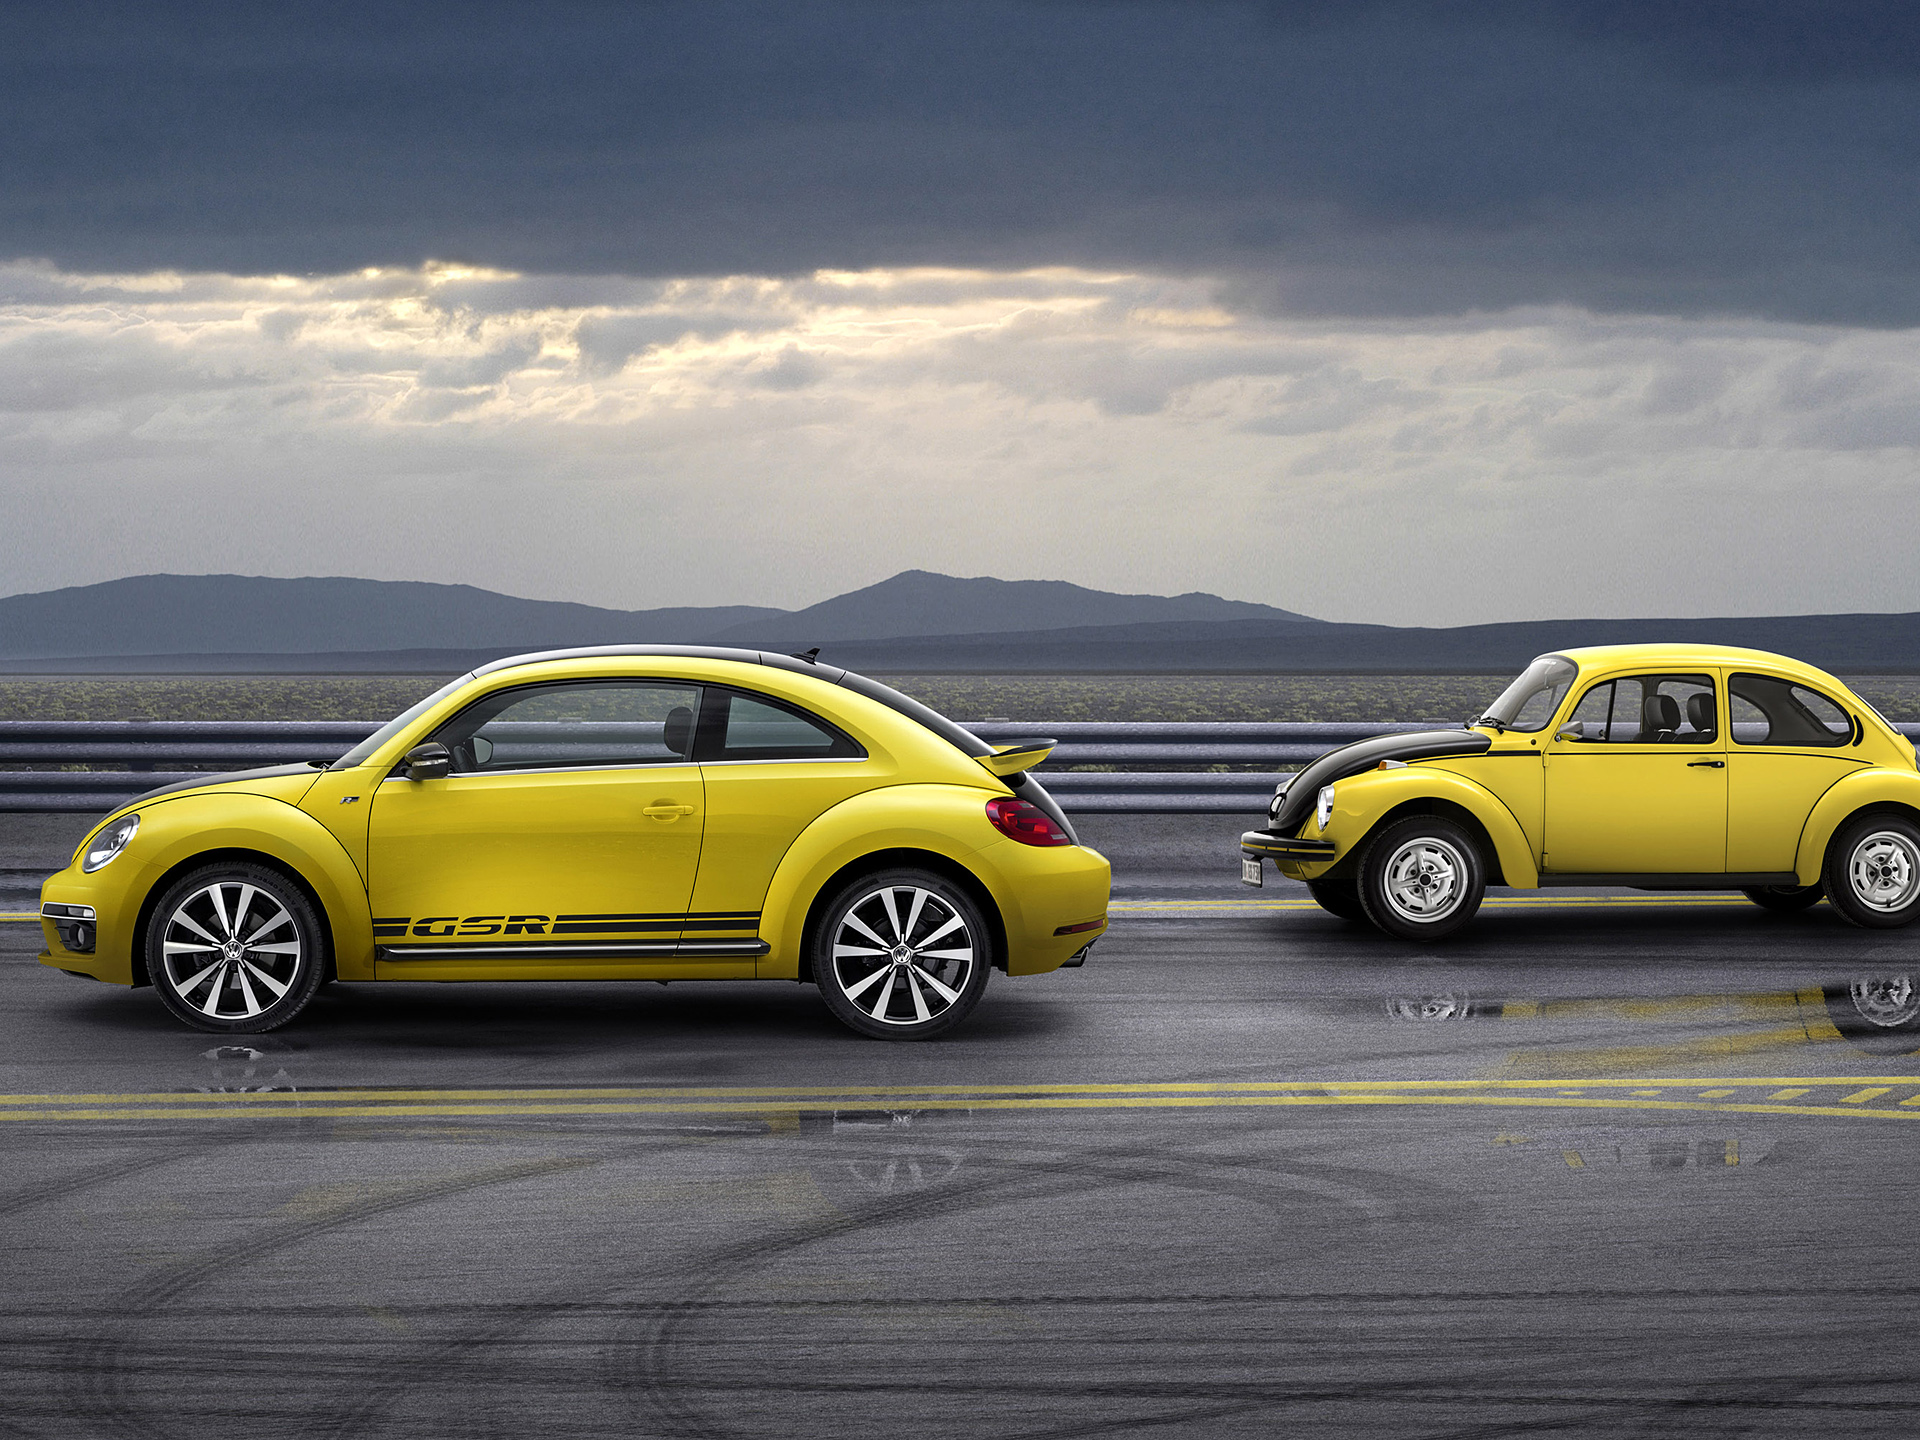  2013 Volkswagen Beetle GSR Wallpaper.